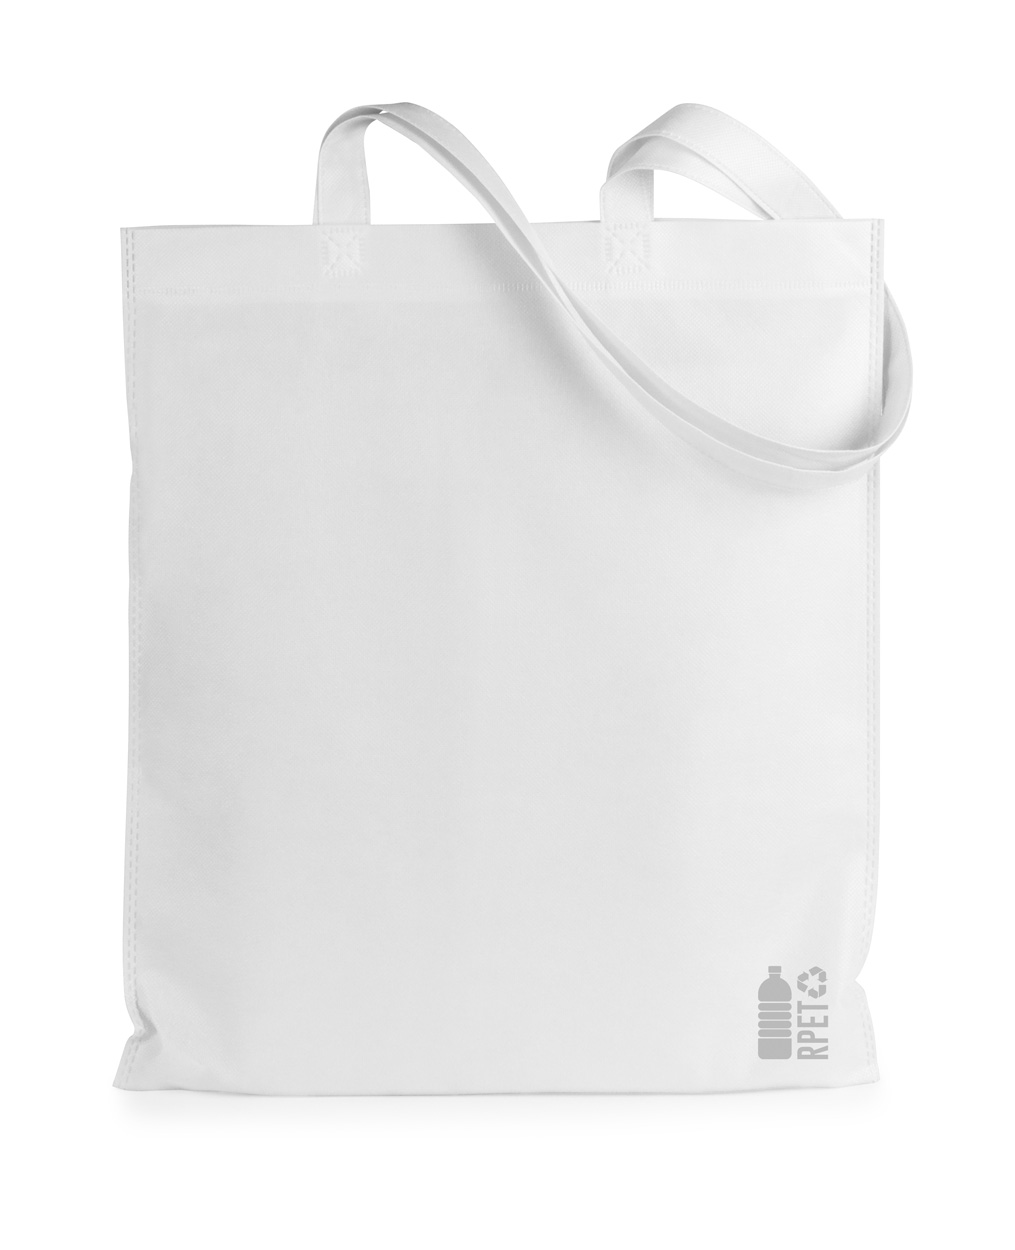 Rezzin RPET nákupní taška - biela